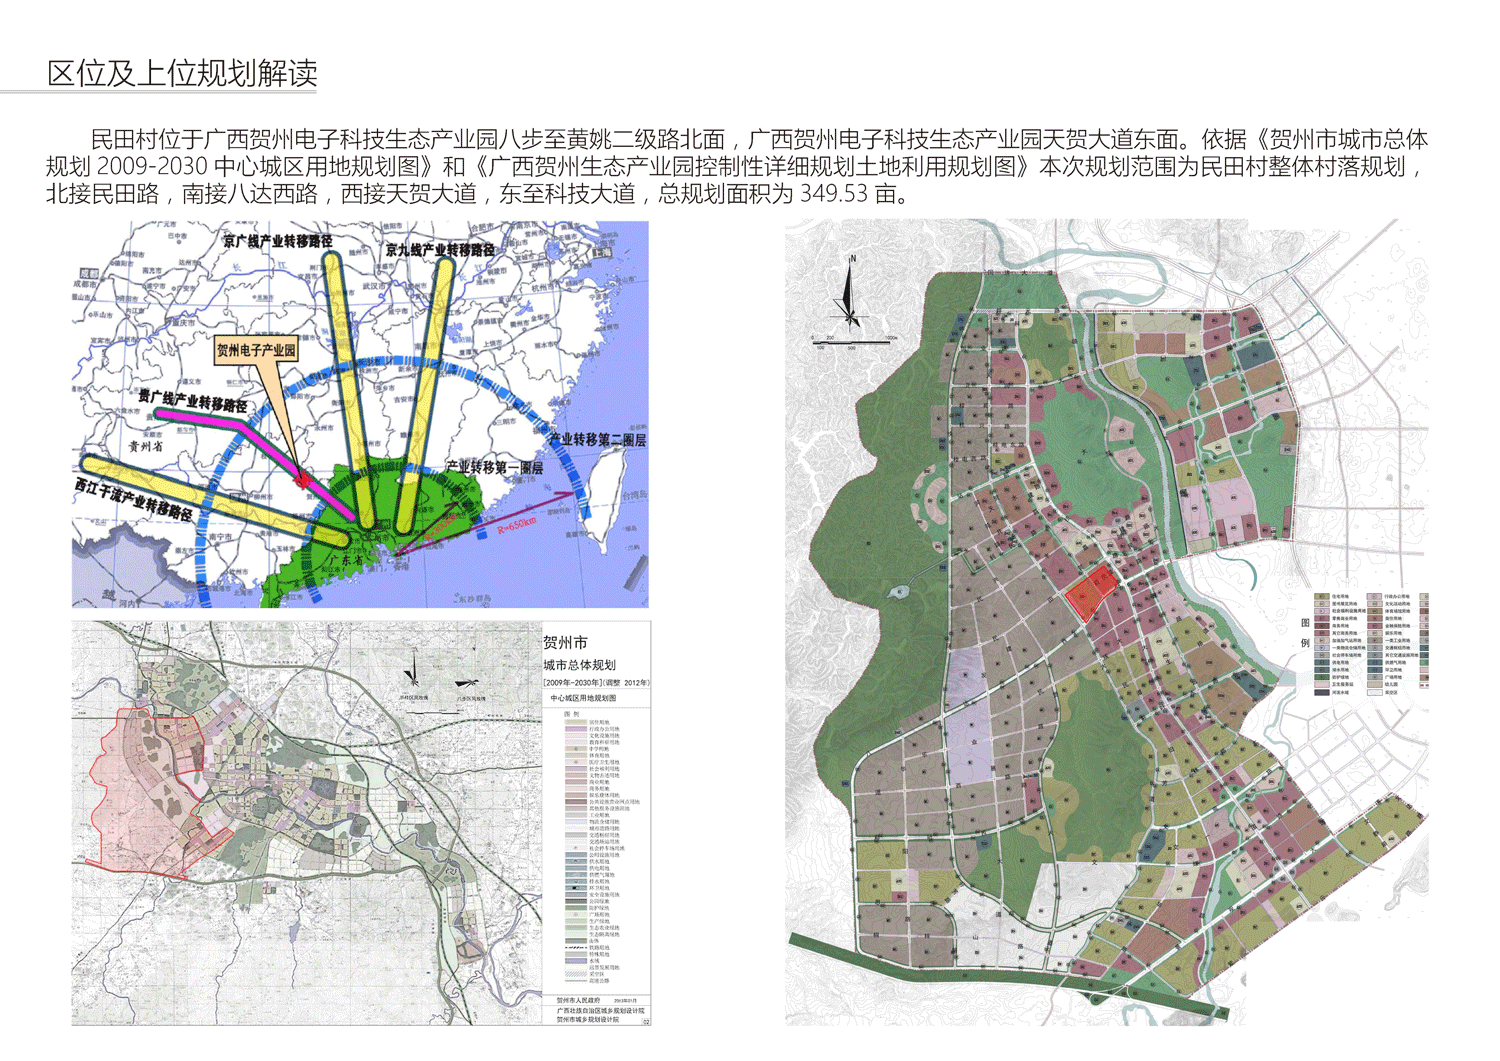 广西贺州电子科技生态产业园棚户区改造项目(官田寨城